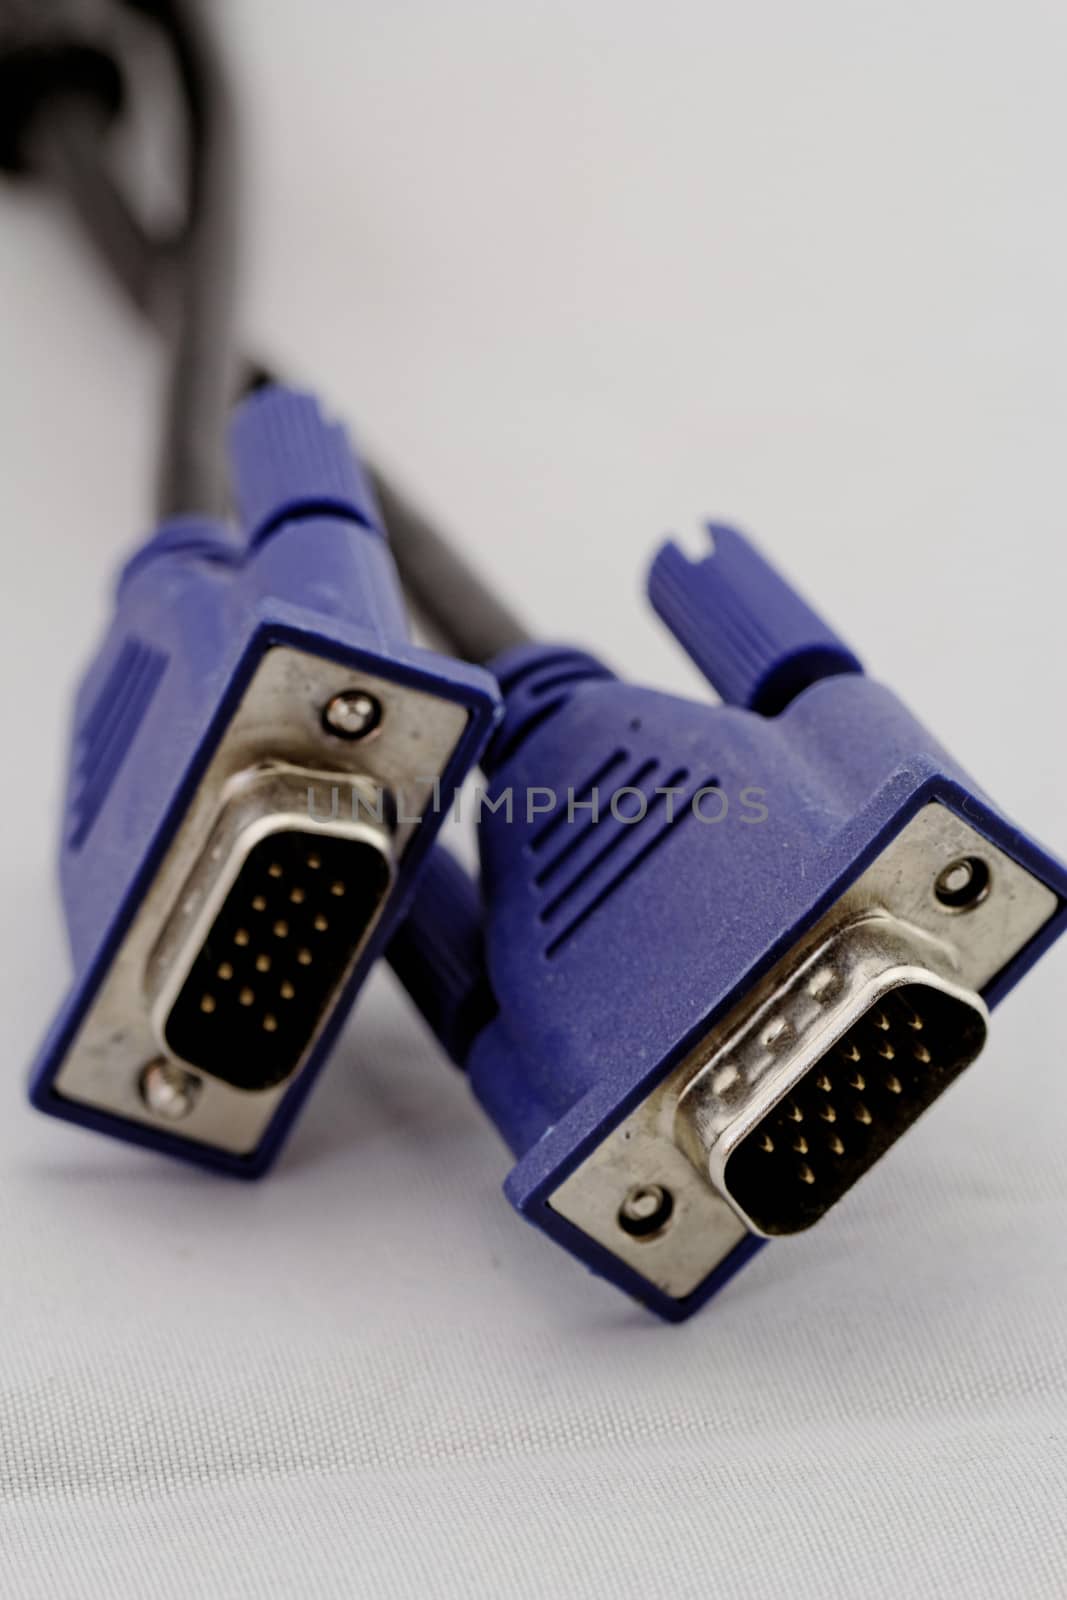 VGA cable by NagyDodo